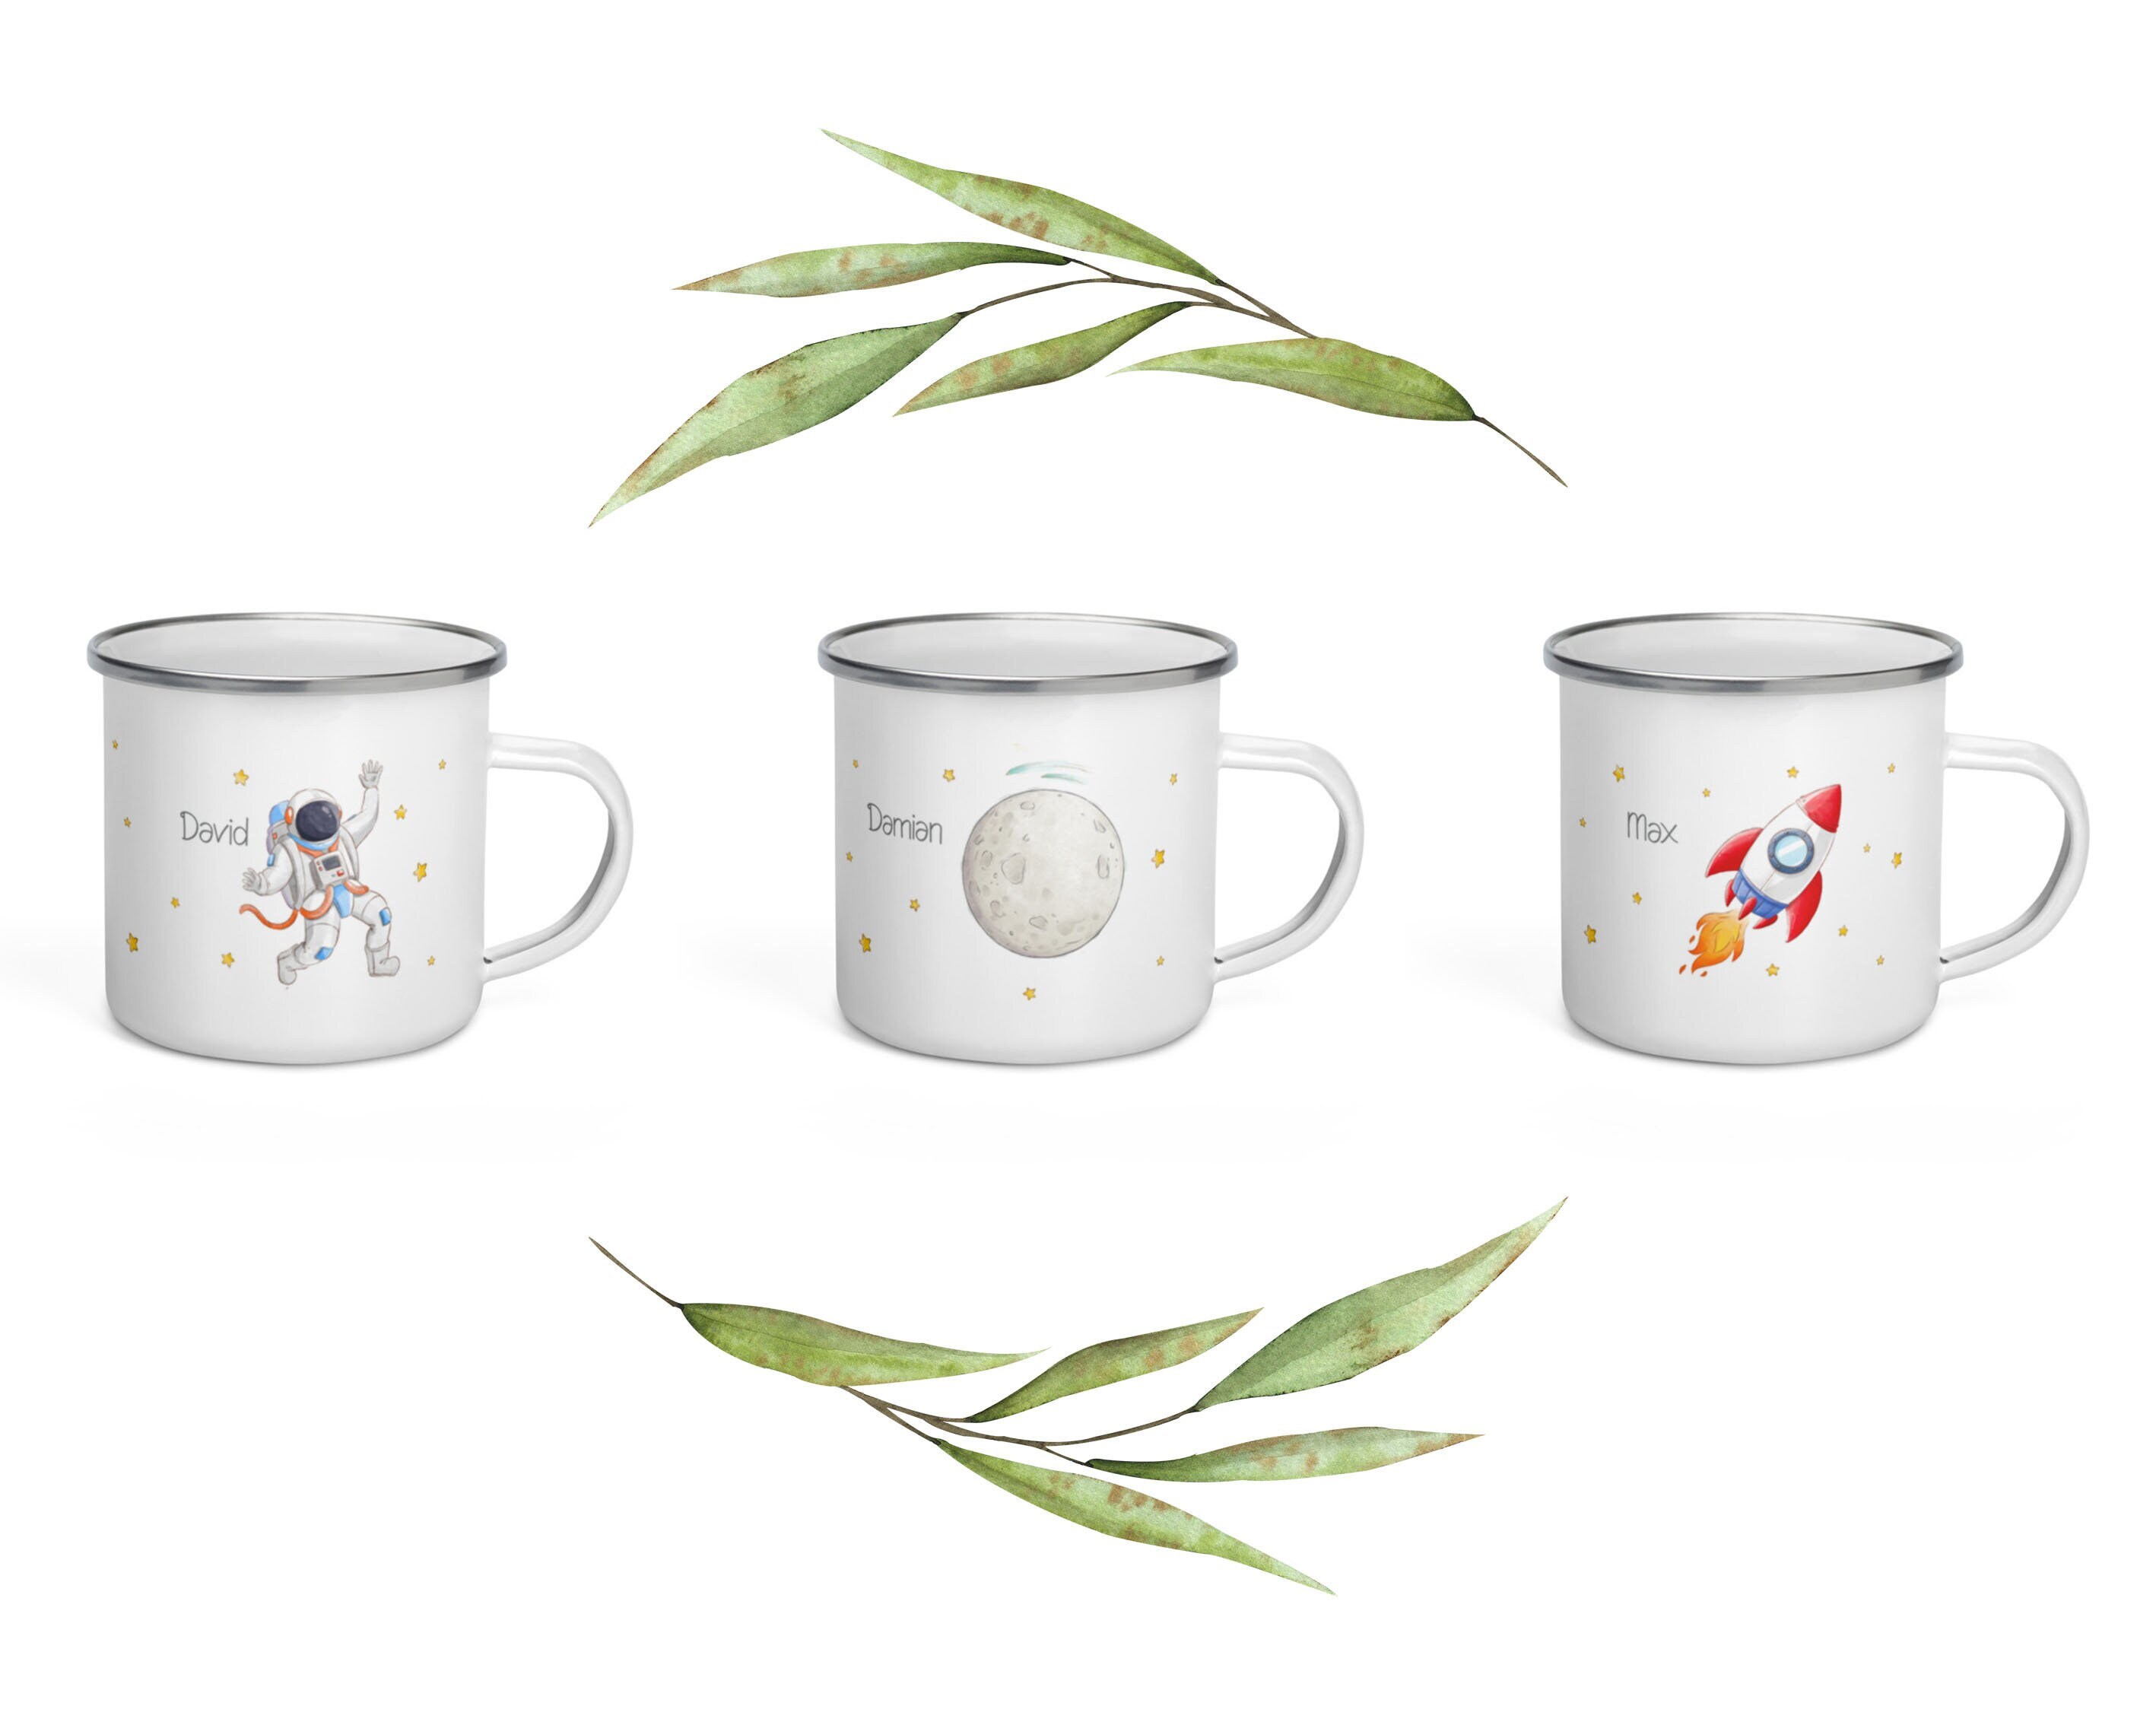 Spacex – tasse en céramique Rocket (Blueprint), tasse à café, thé